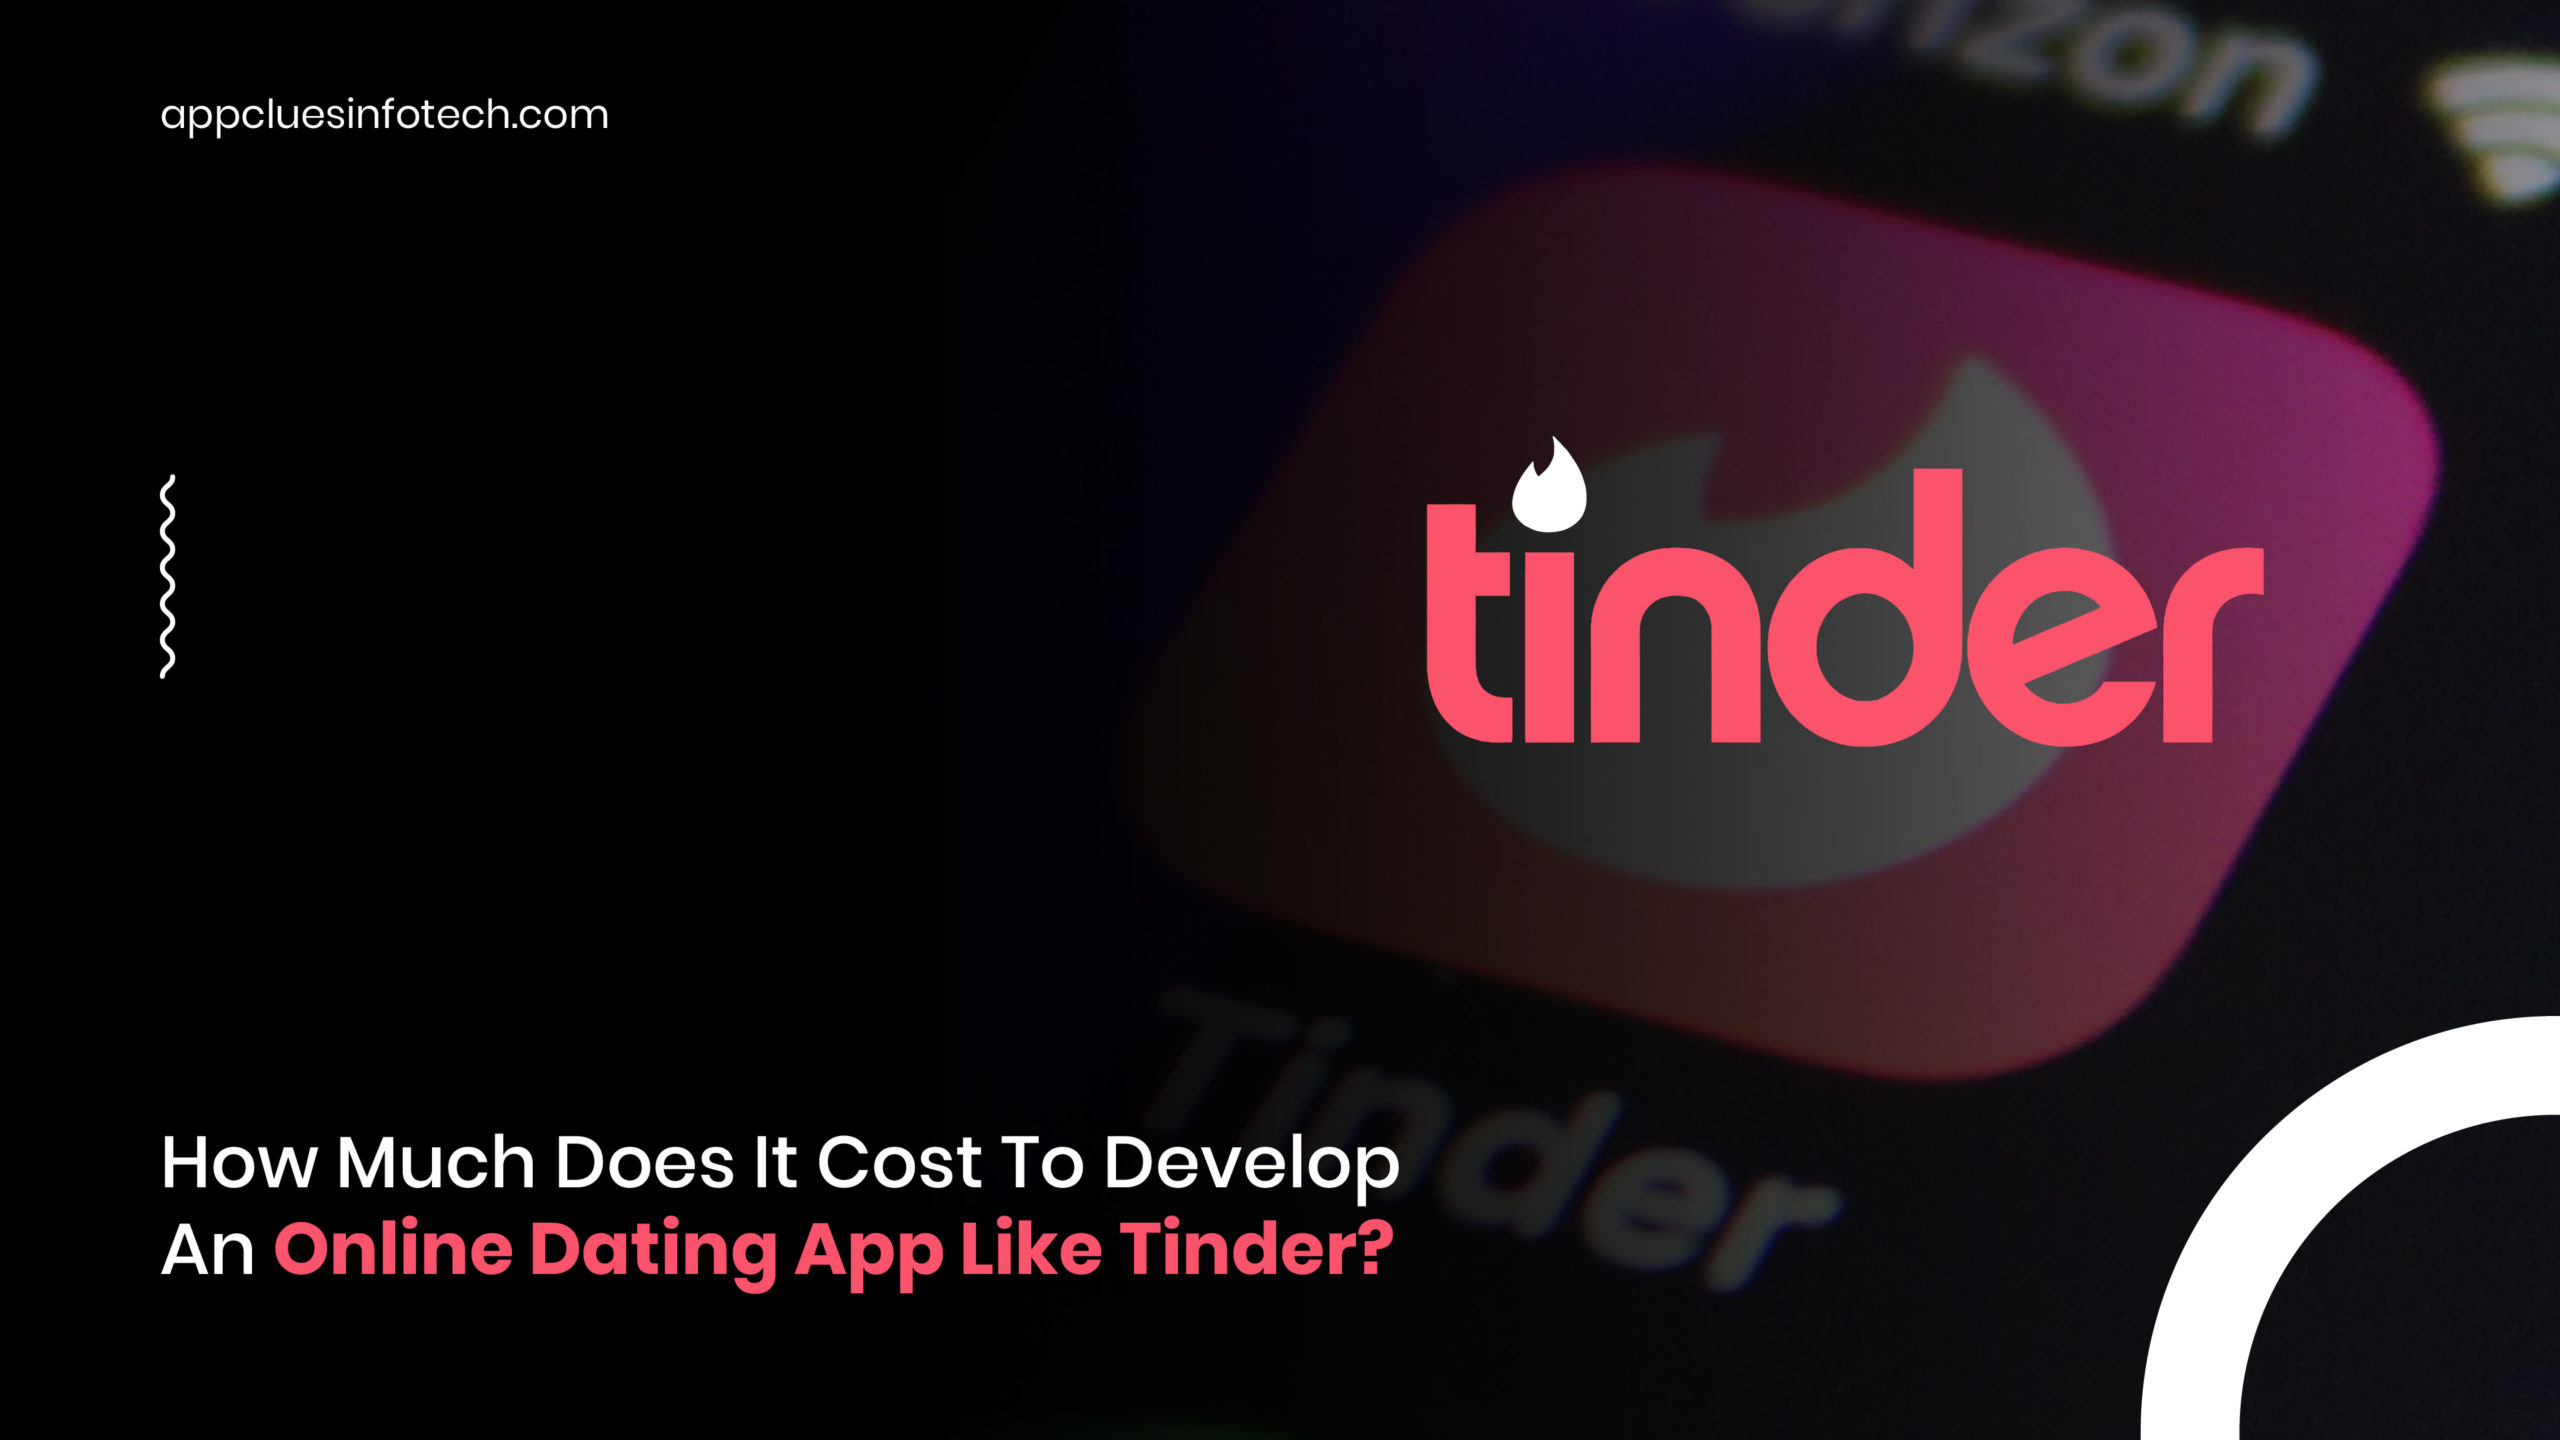 Wir wissen, wie man eine Tinder-ähnliche App erstellt